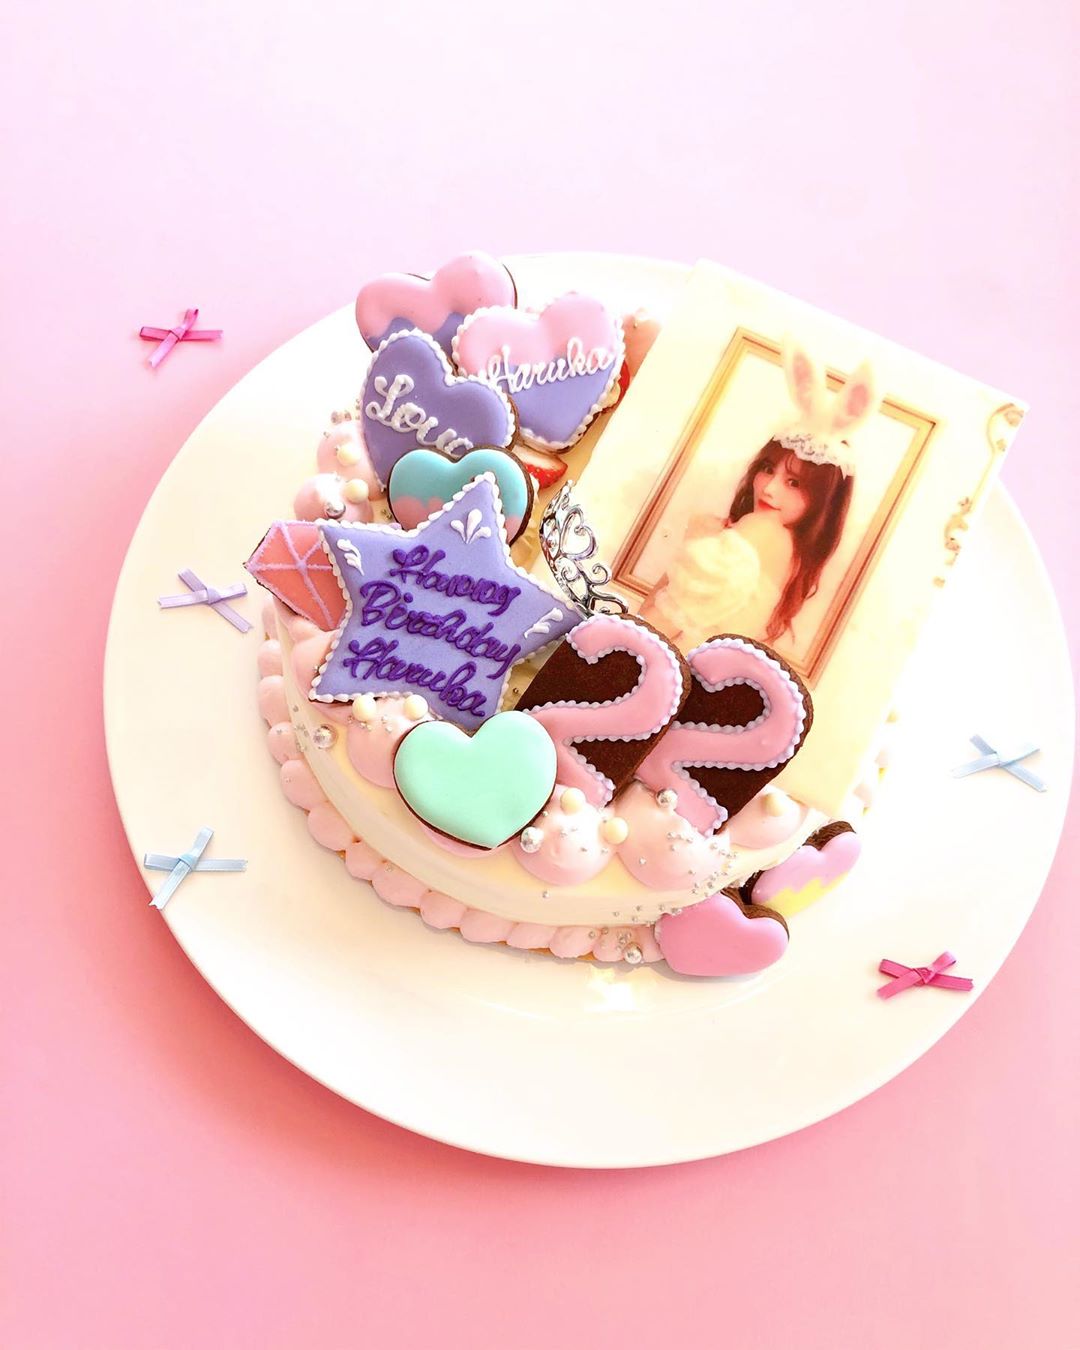 込山榛香 22歳の誕生日ケーキ 可愛すぎる 22歳になっても好みは変わらず 可愛いのが大好きです 誕生日ケーキ オーダーメイド Moe Zine